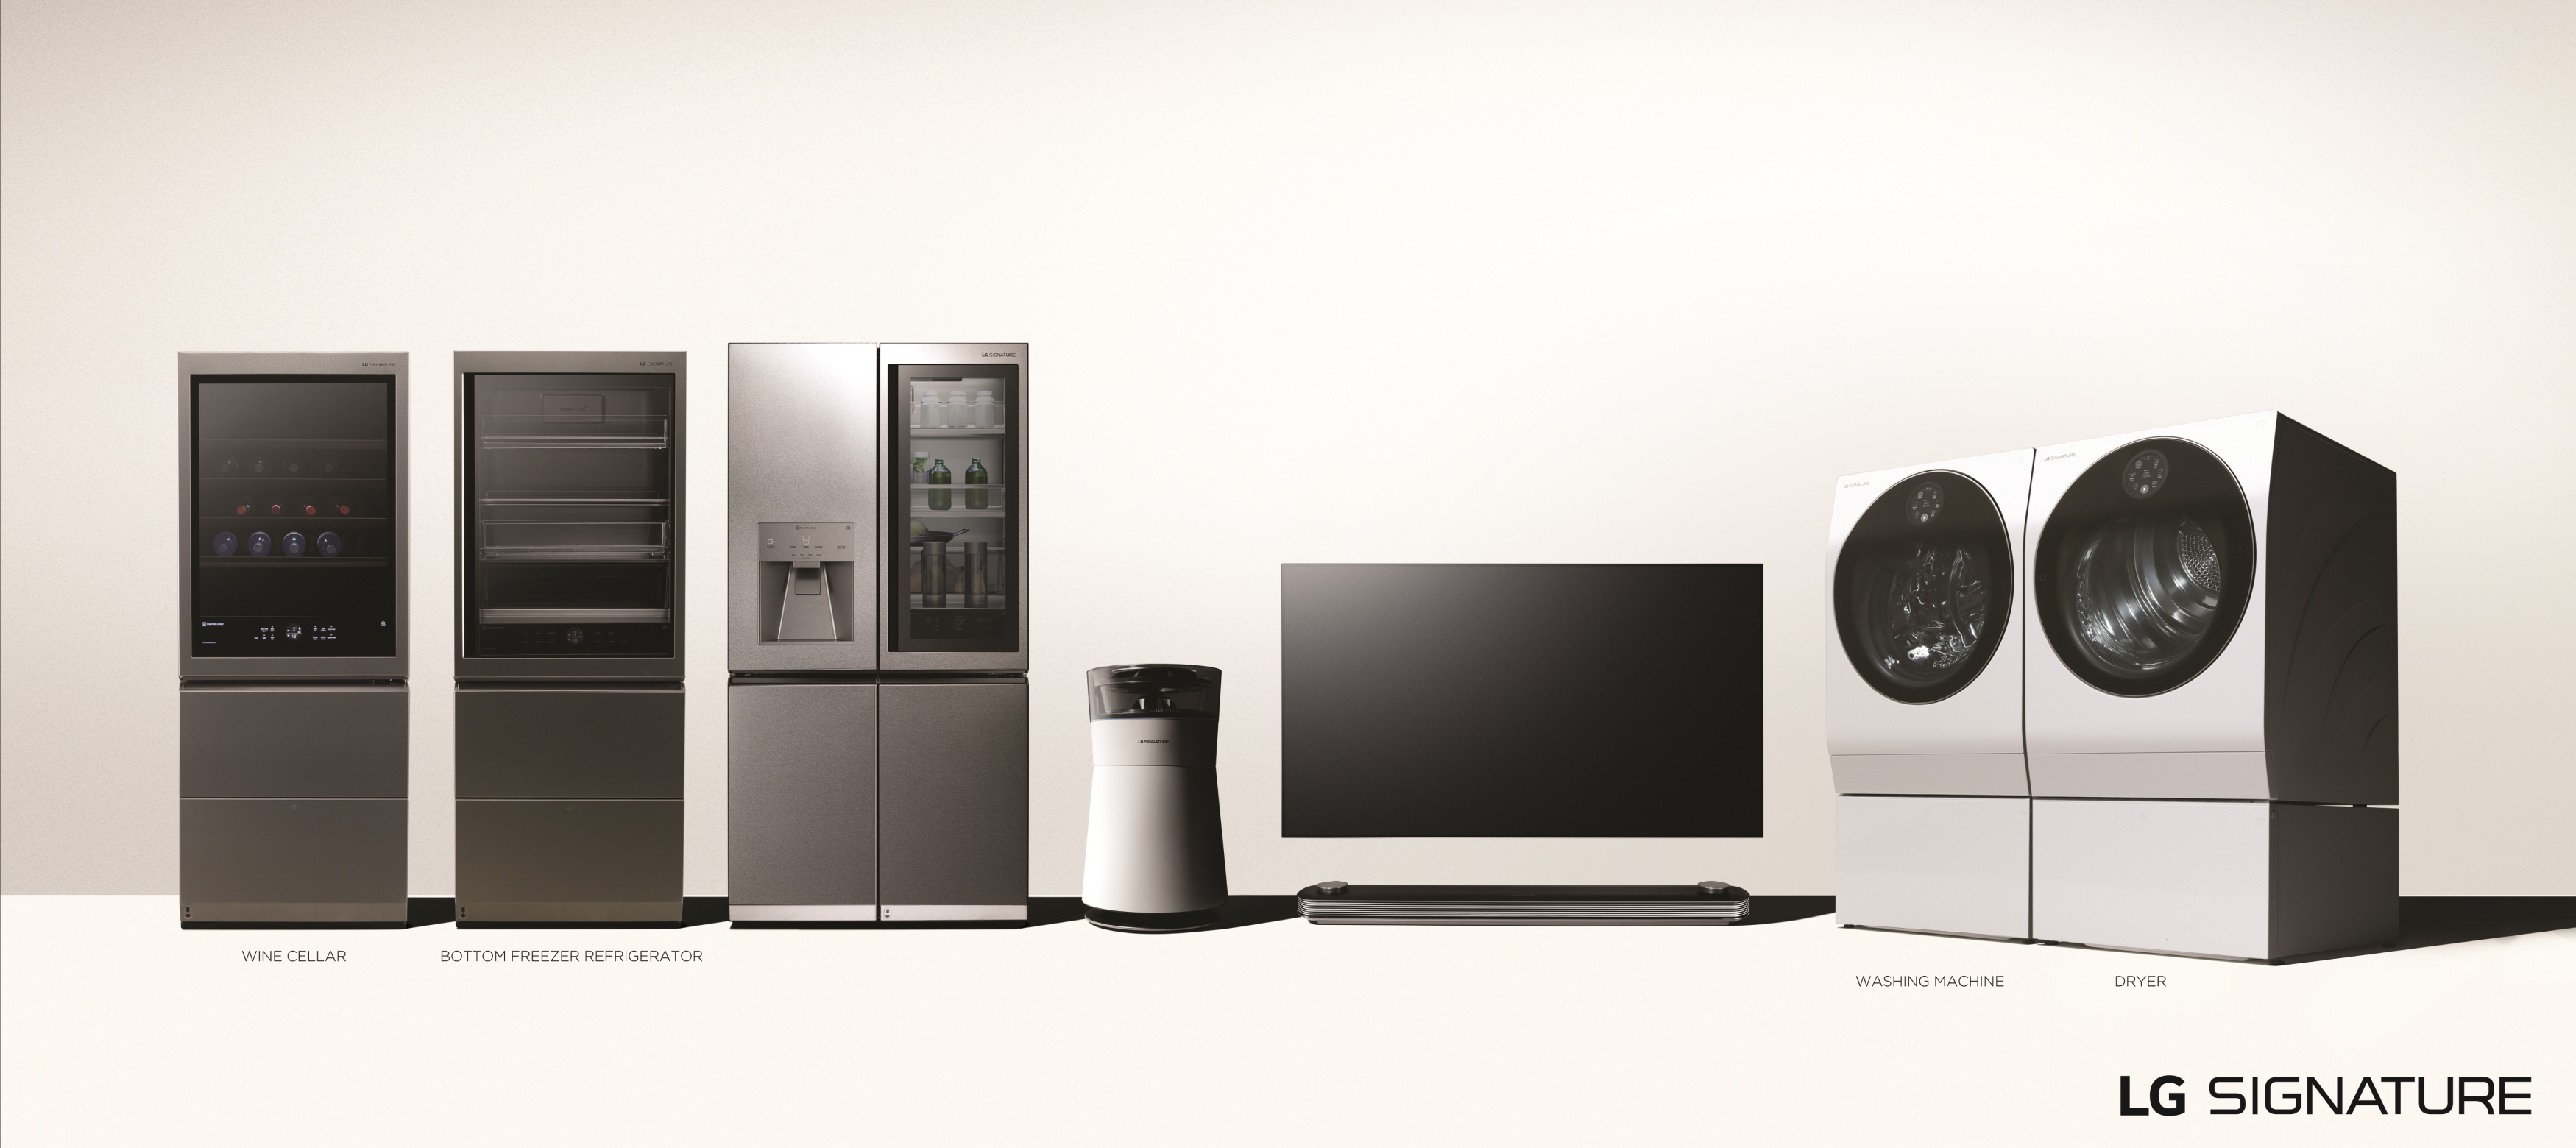 LG전자의 초프리미엄 가전 'LG 시그니처'의 전 제품 이미지. 왼쪽부터 와인셀러, 상냉장 하냉동 냉장고, 냉장고, 공기청정기, 올레드 TV, 세탁기, 건조기.